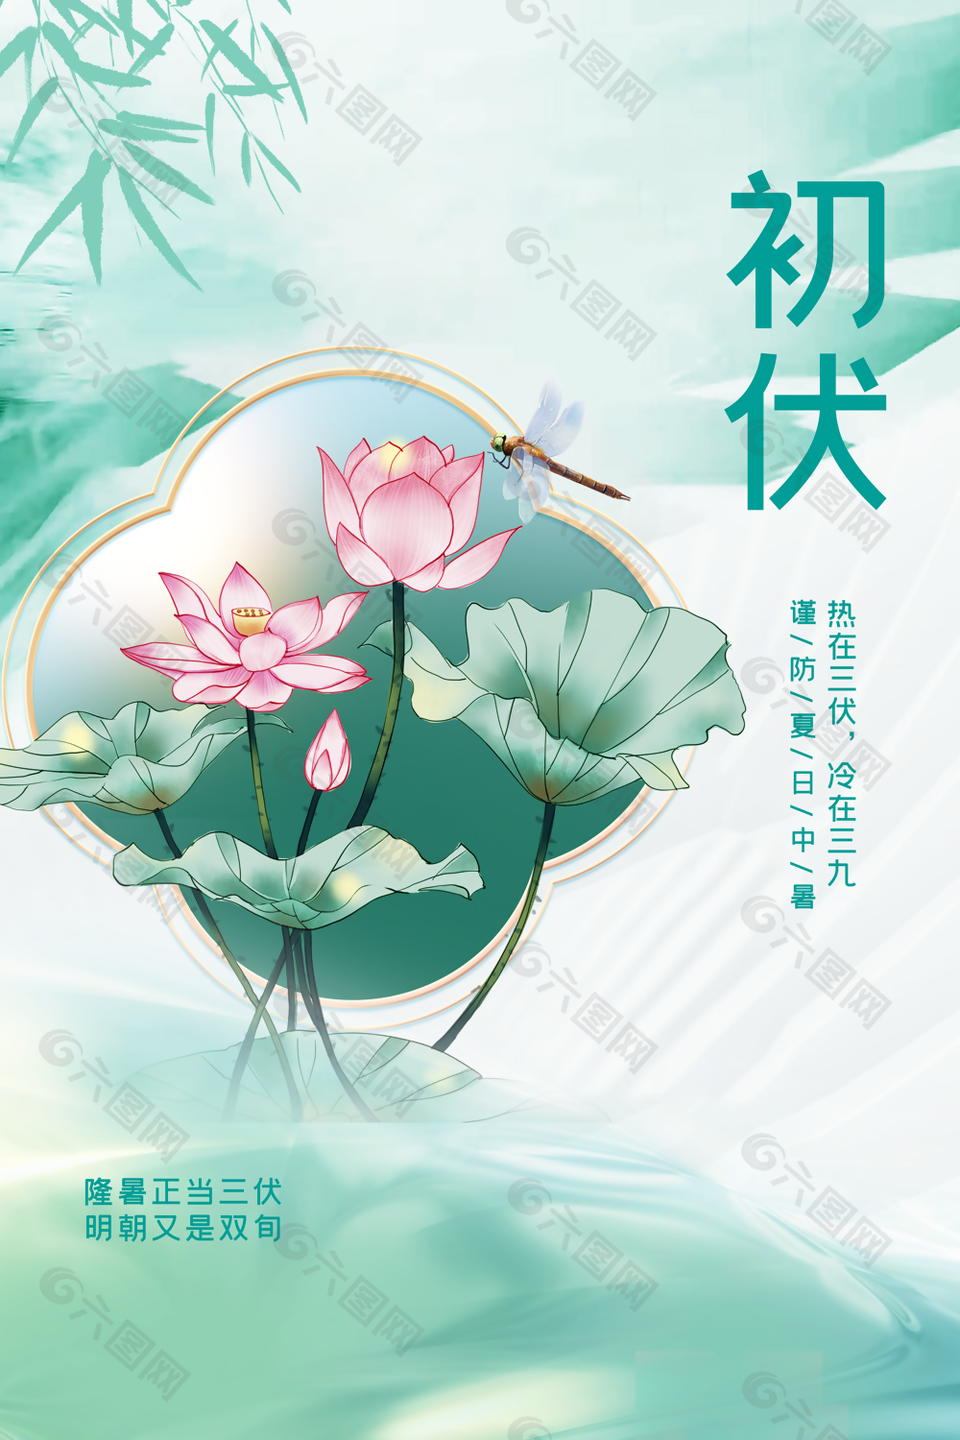 中式古典浅绿传统气候三伏天之初伏海报下载